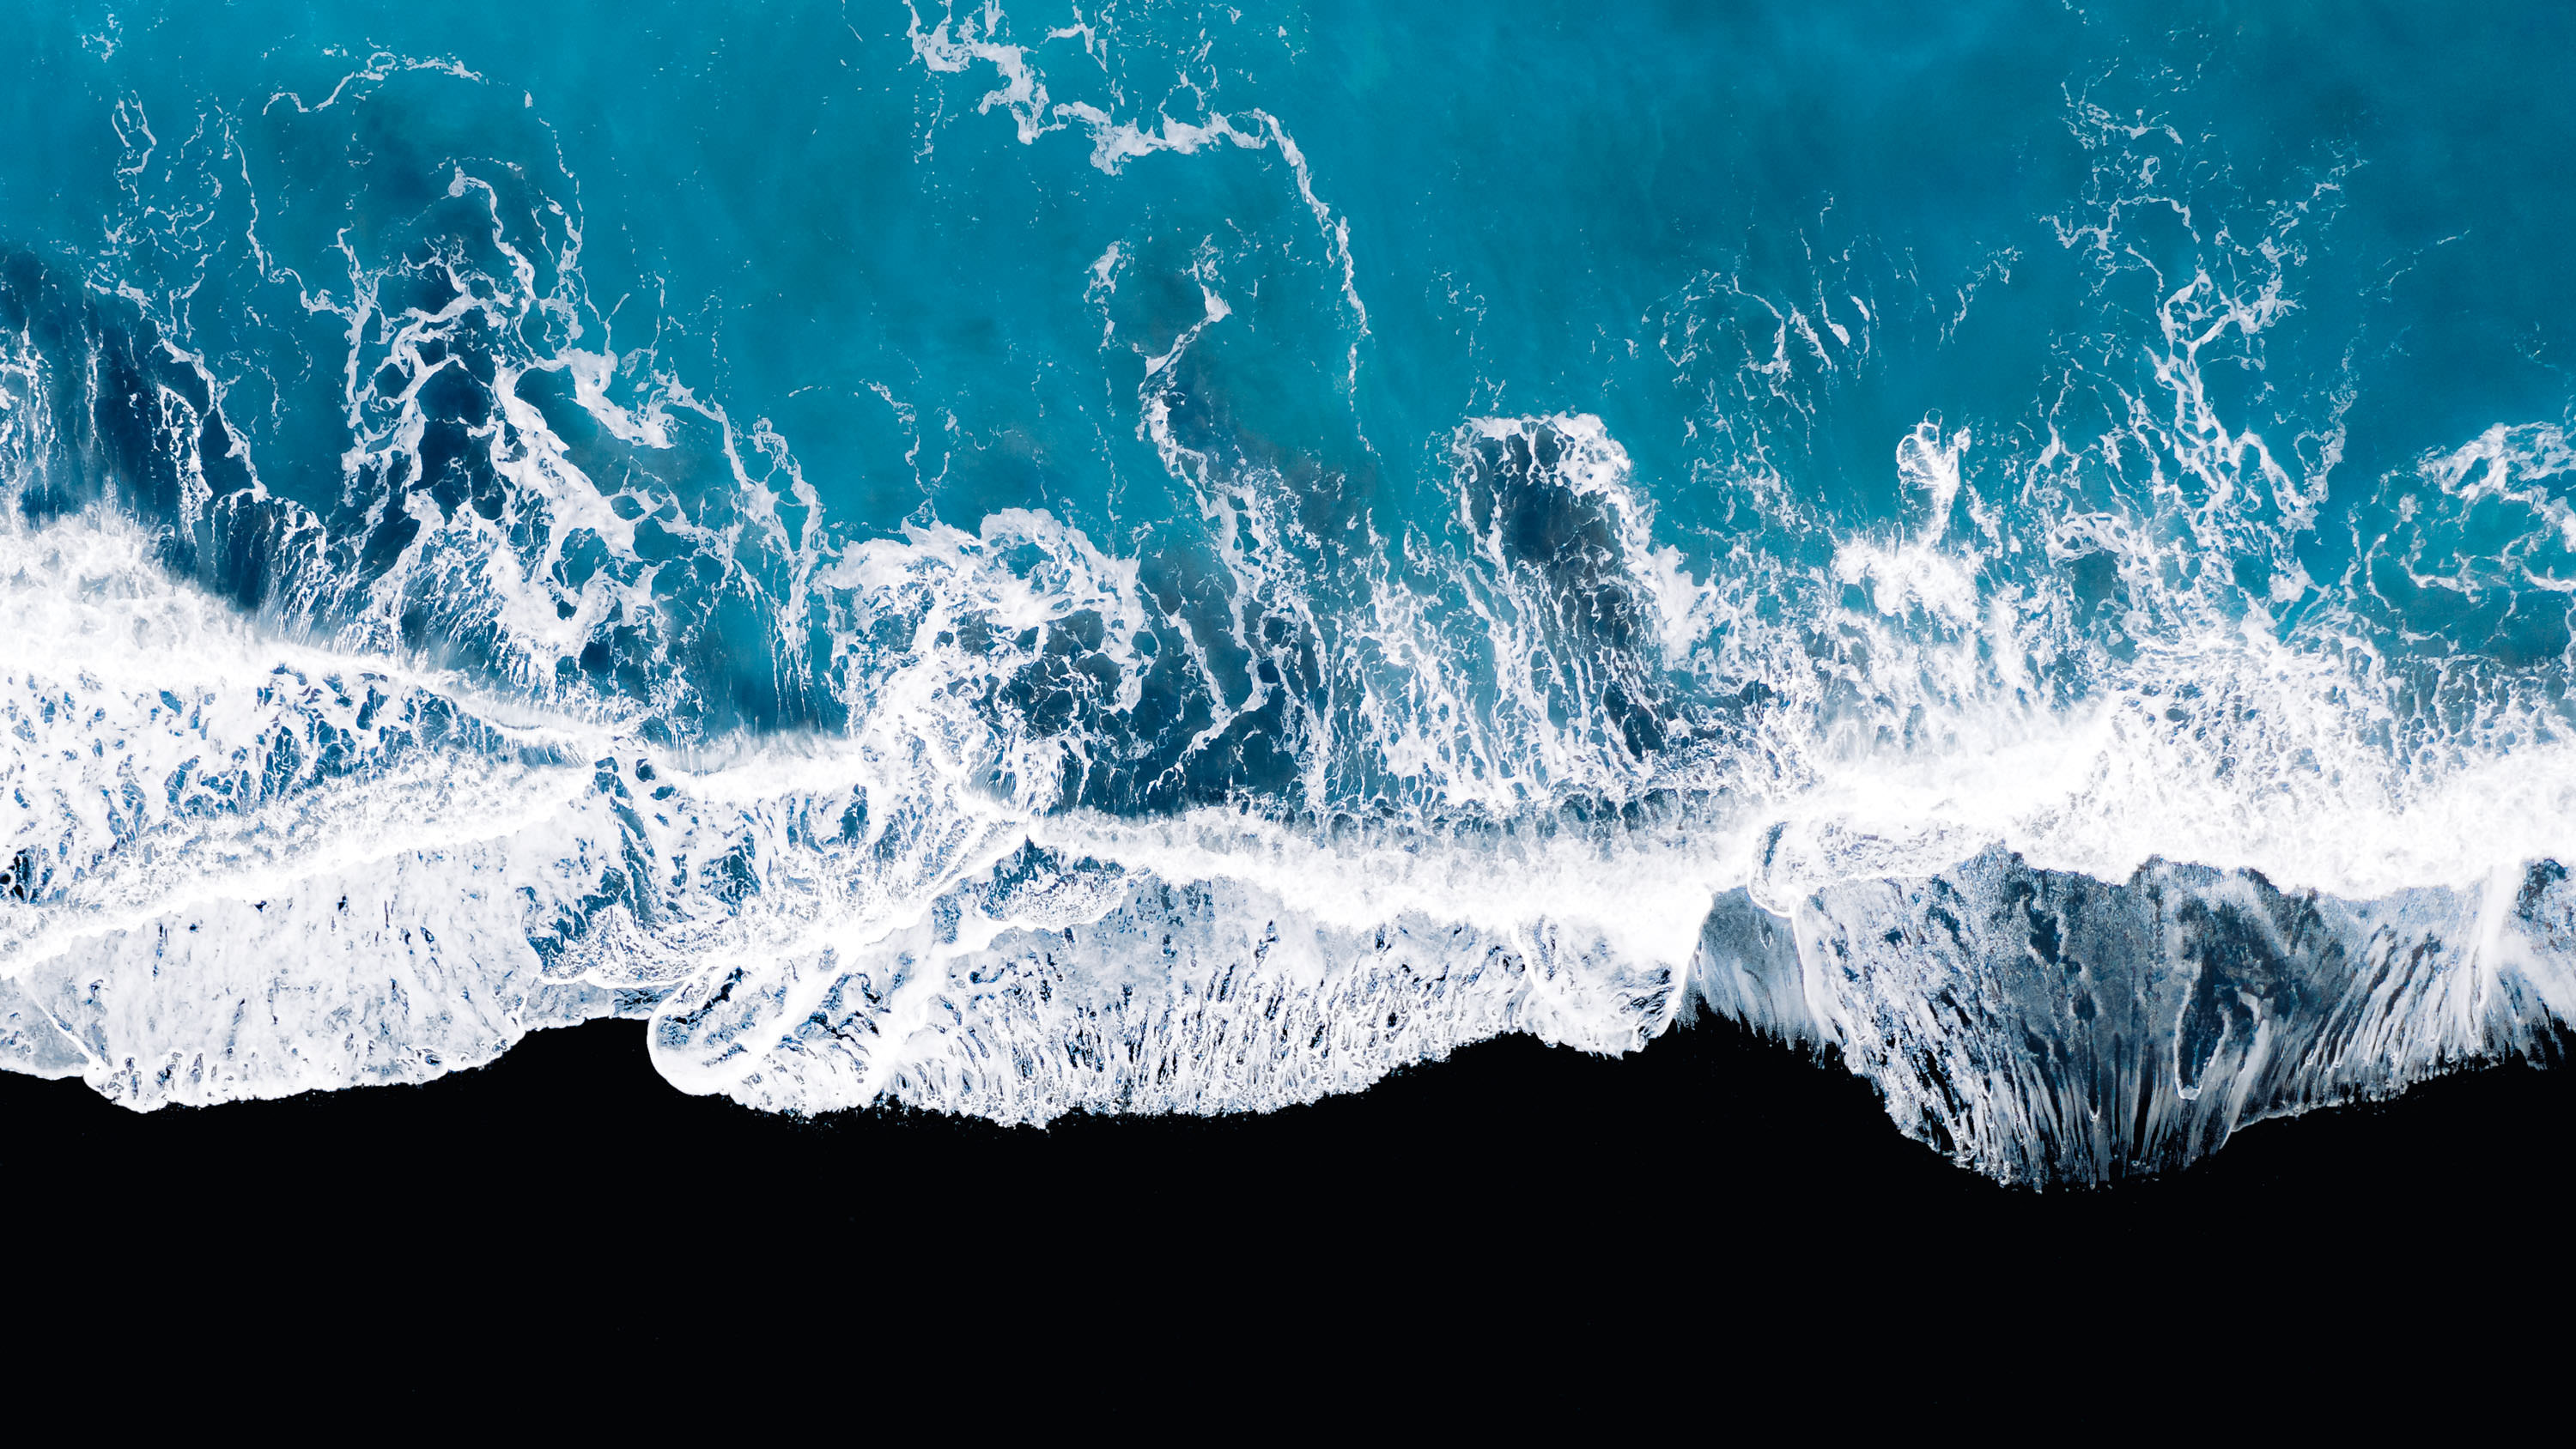 Ocean Waves Aerial View Wallpapers | HD Wallpapers